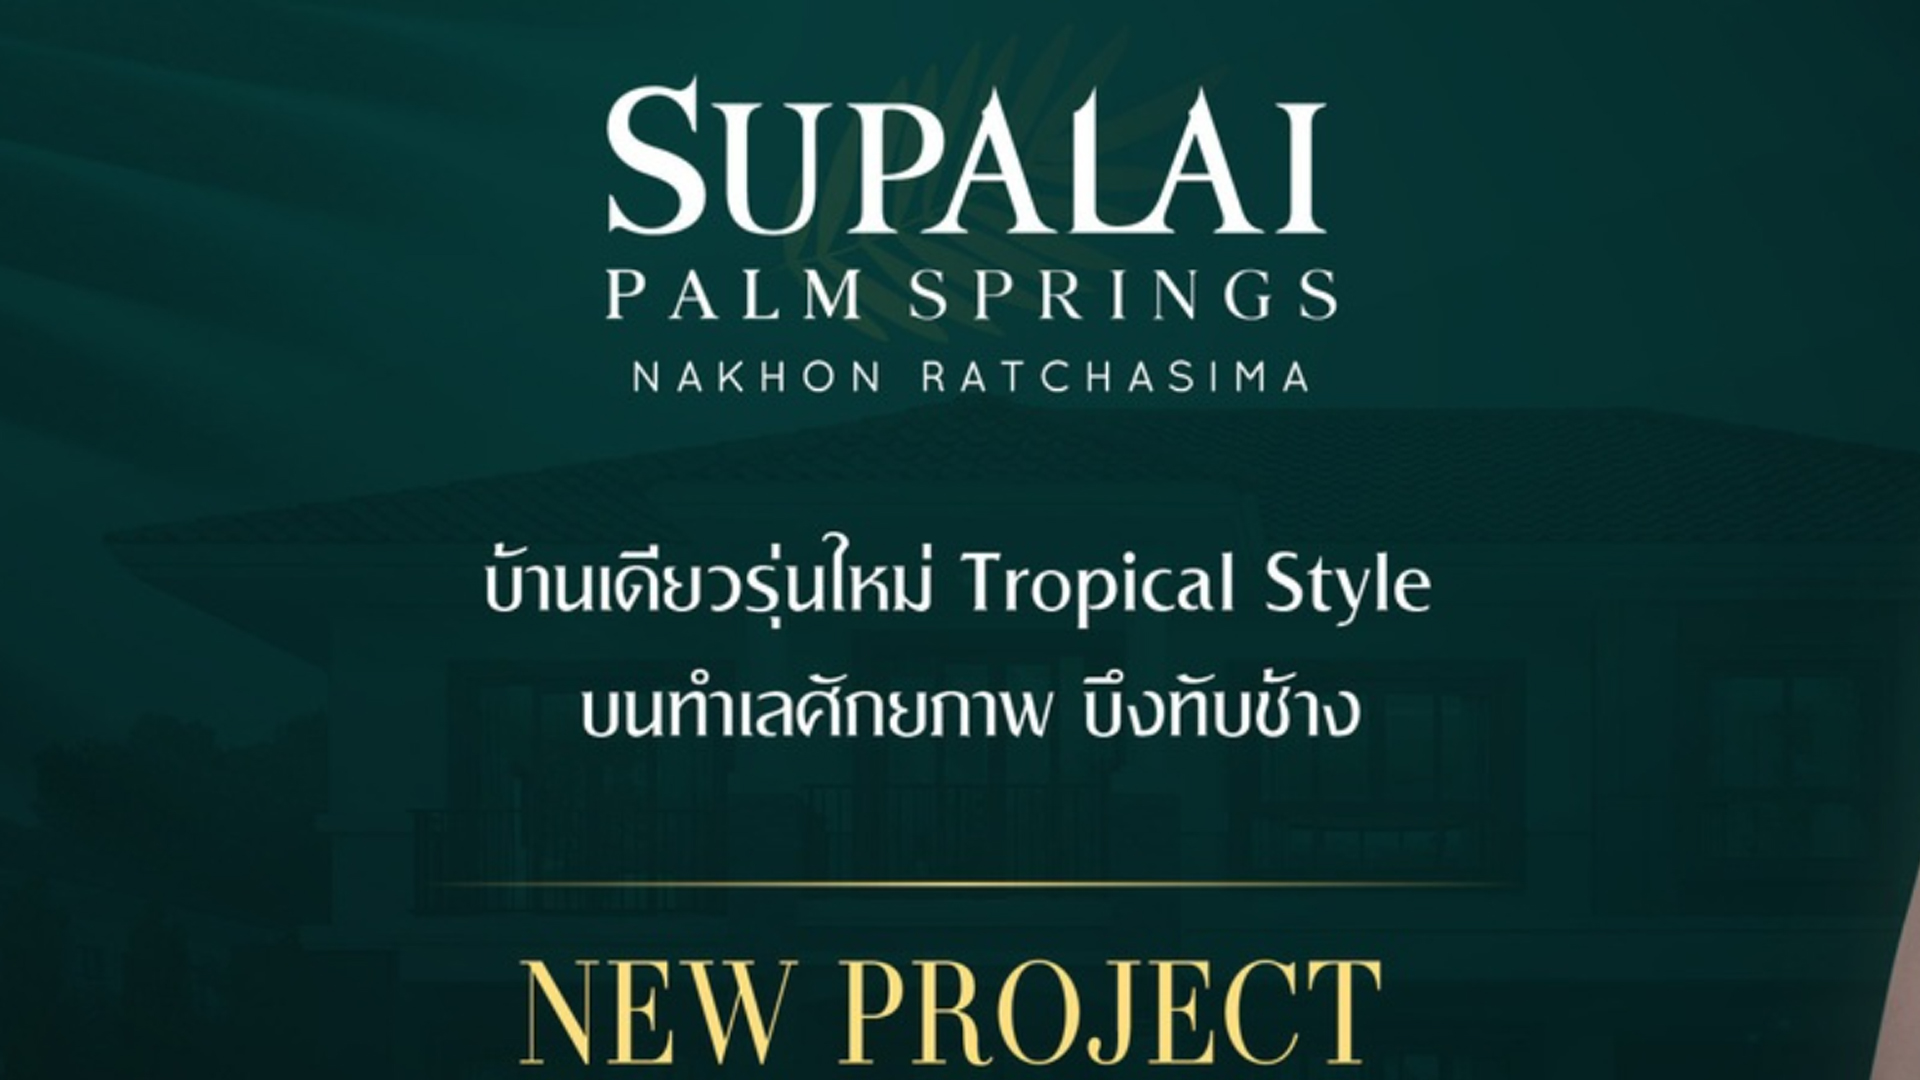 ศุภาลัย ปาล์มสปริงส์ นครราชสีมา (Supalai Plam Springs Nakhonratchasima) ราคา-สเปค-โปรโมชั่น